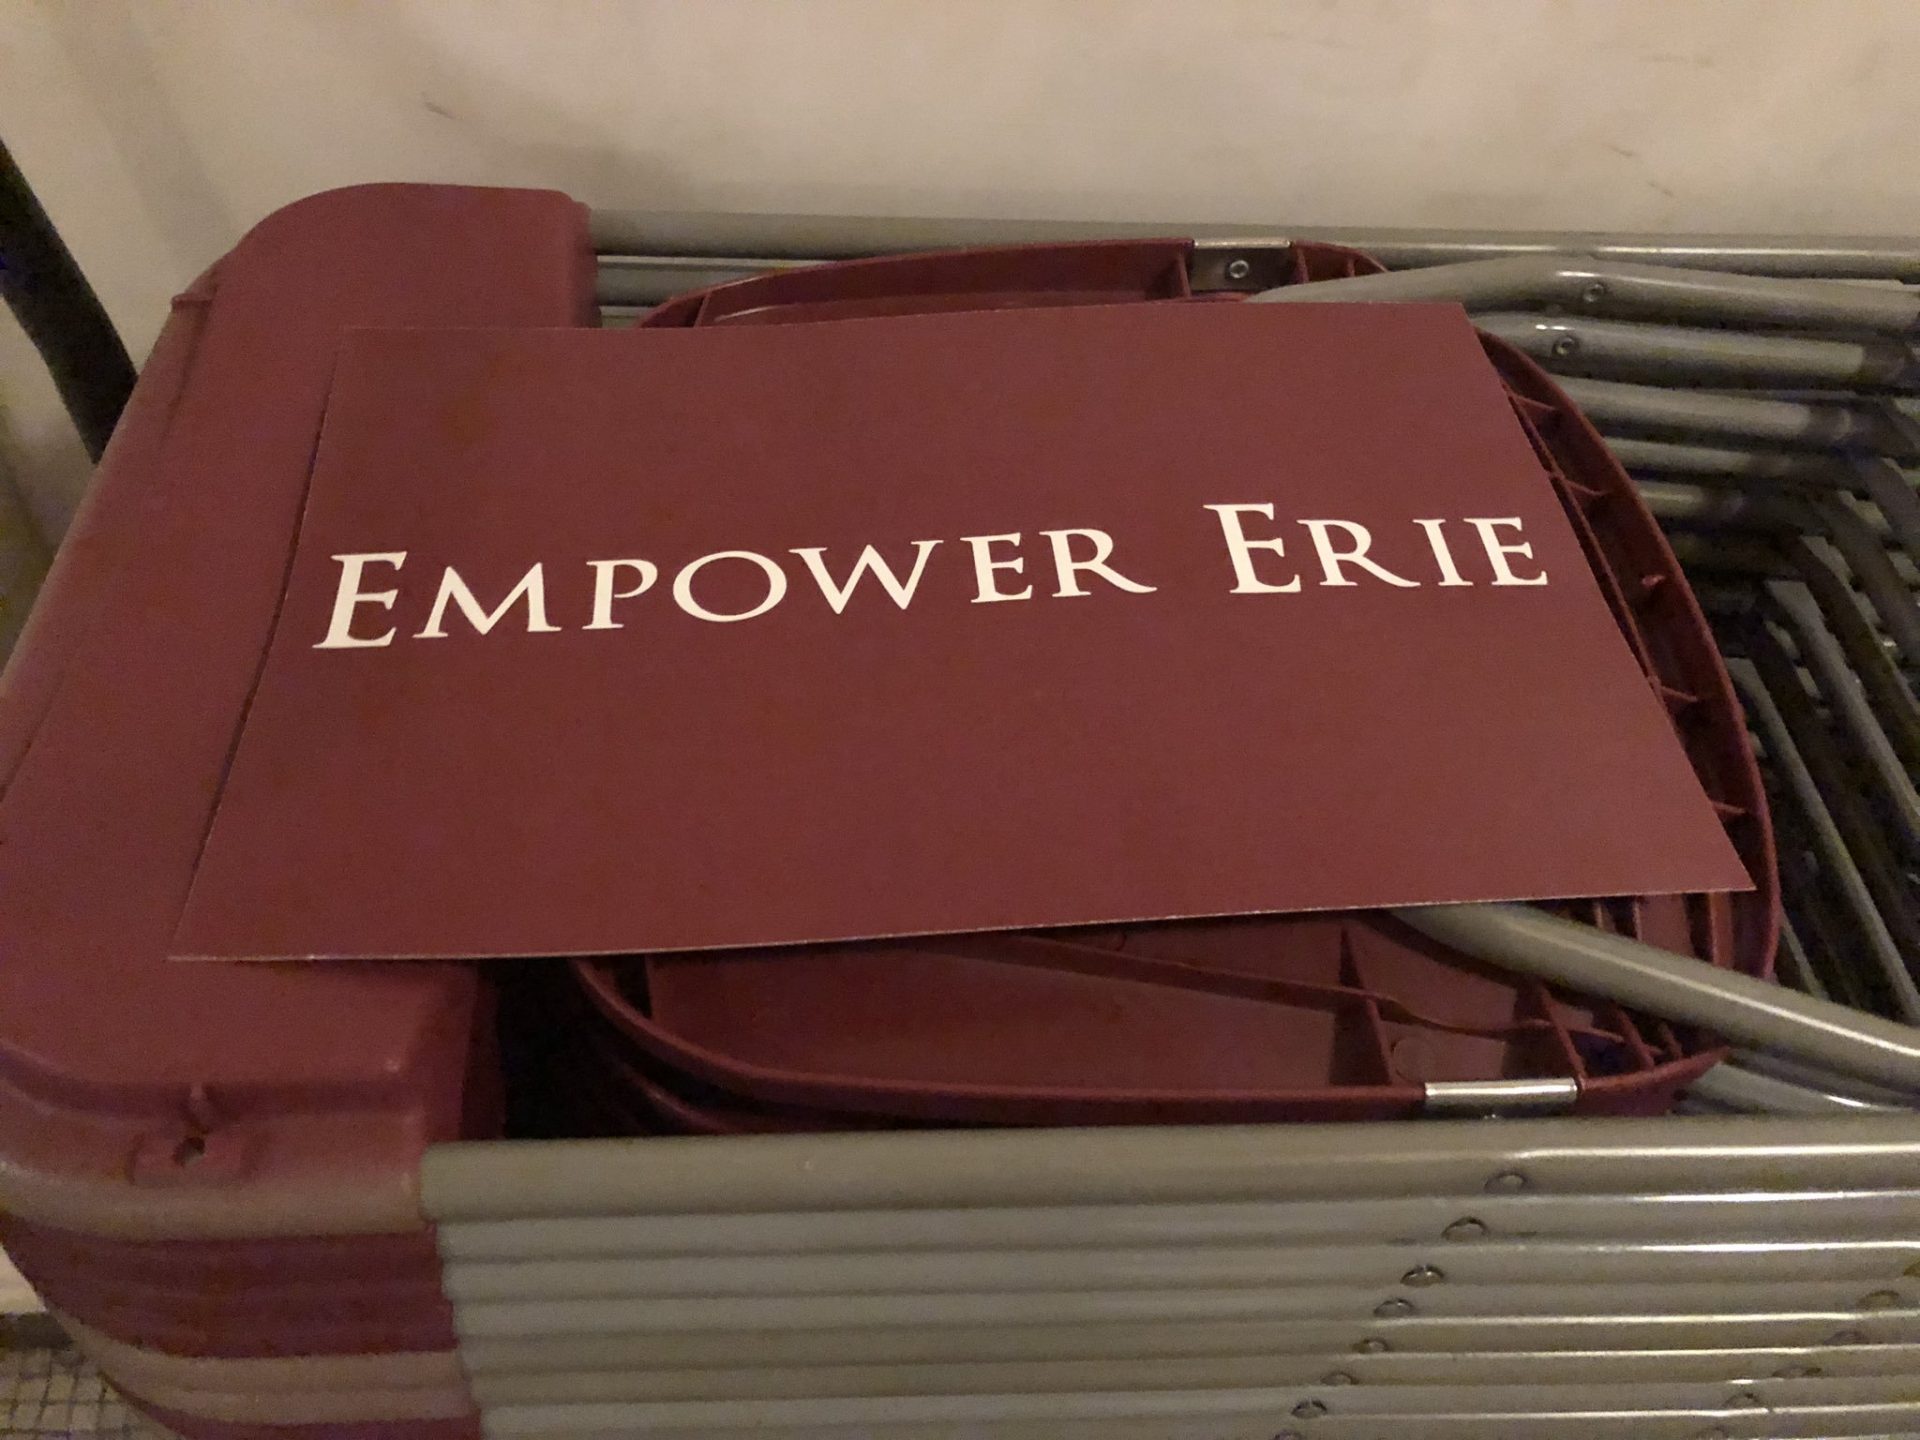 Empower Erie